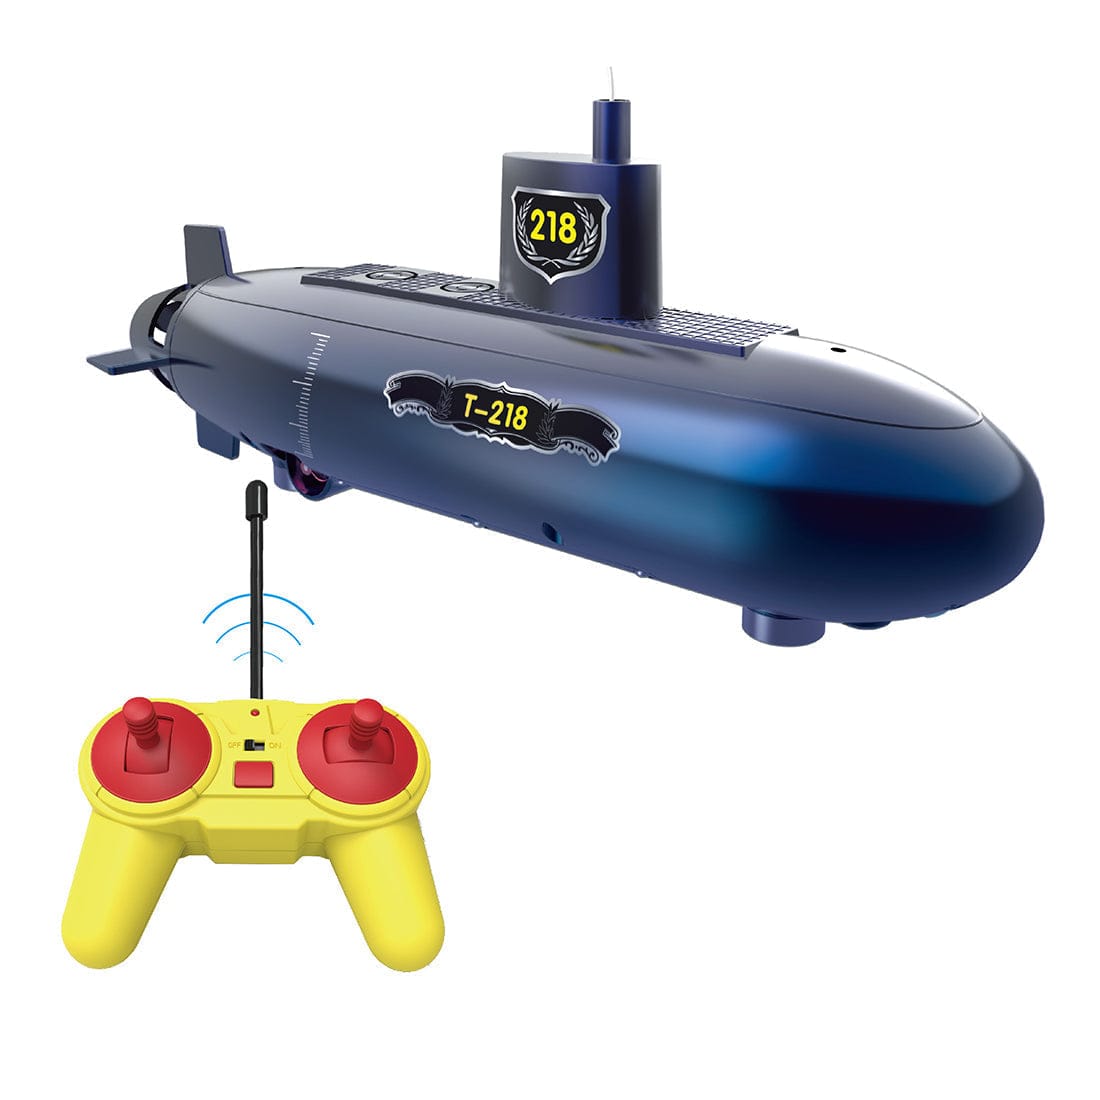 Brinquedo submarino com controle remoto